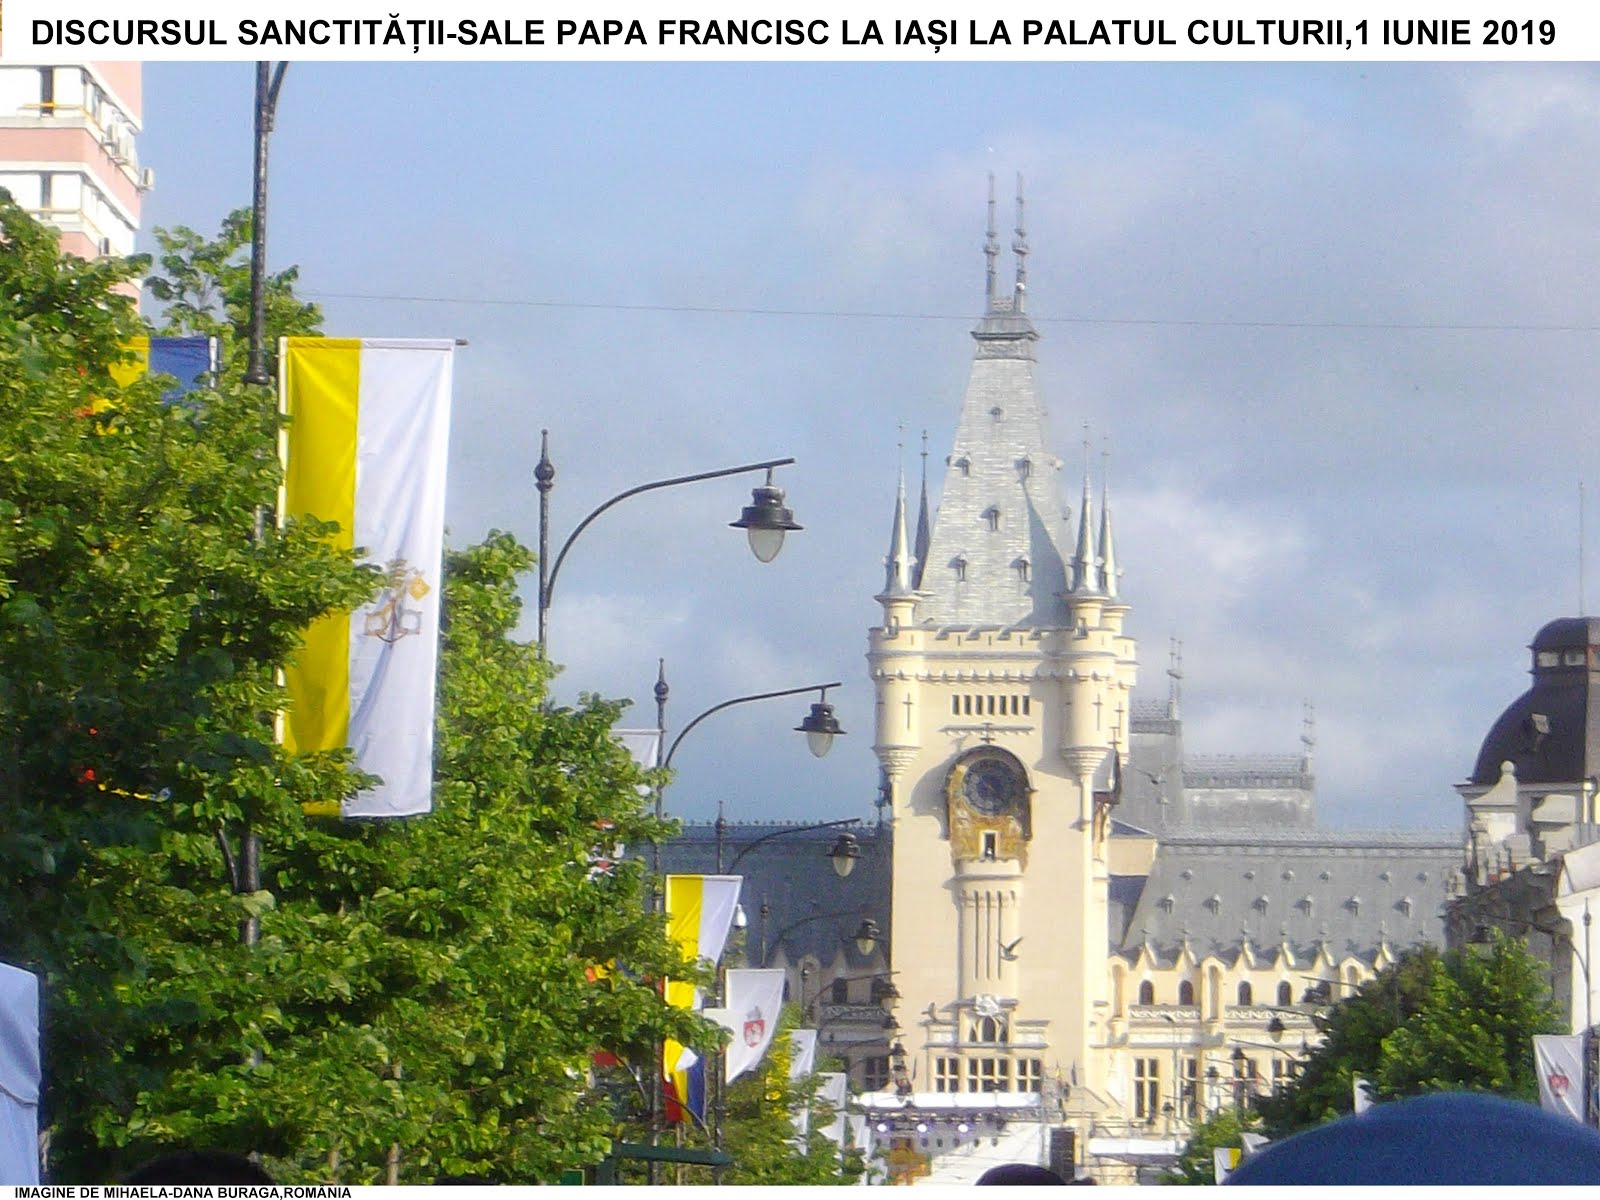 VIZITA SANCTITĂȚII-SALE PAPA FRANCISC ÎN ROMÂNIA,DISCURSUL DIN 1 IUNIE 2019 LA IAȘI,PALATUL CULTURI